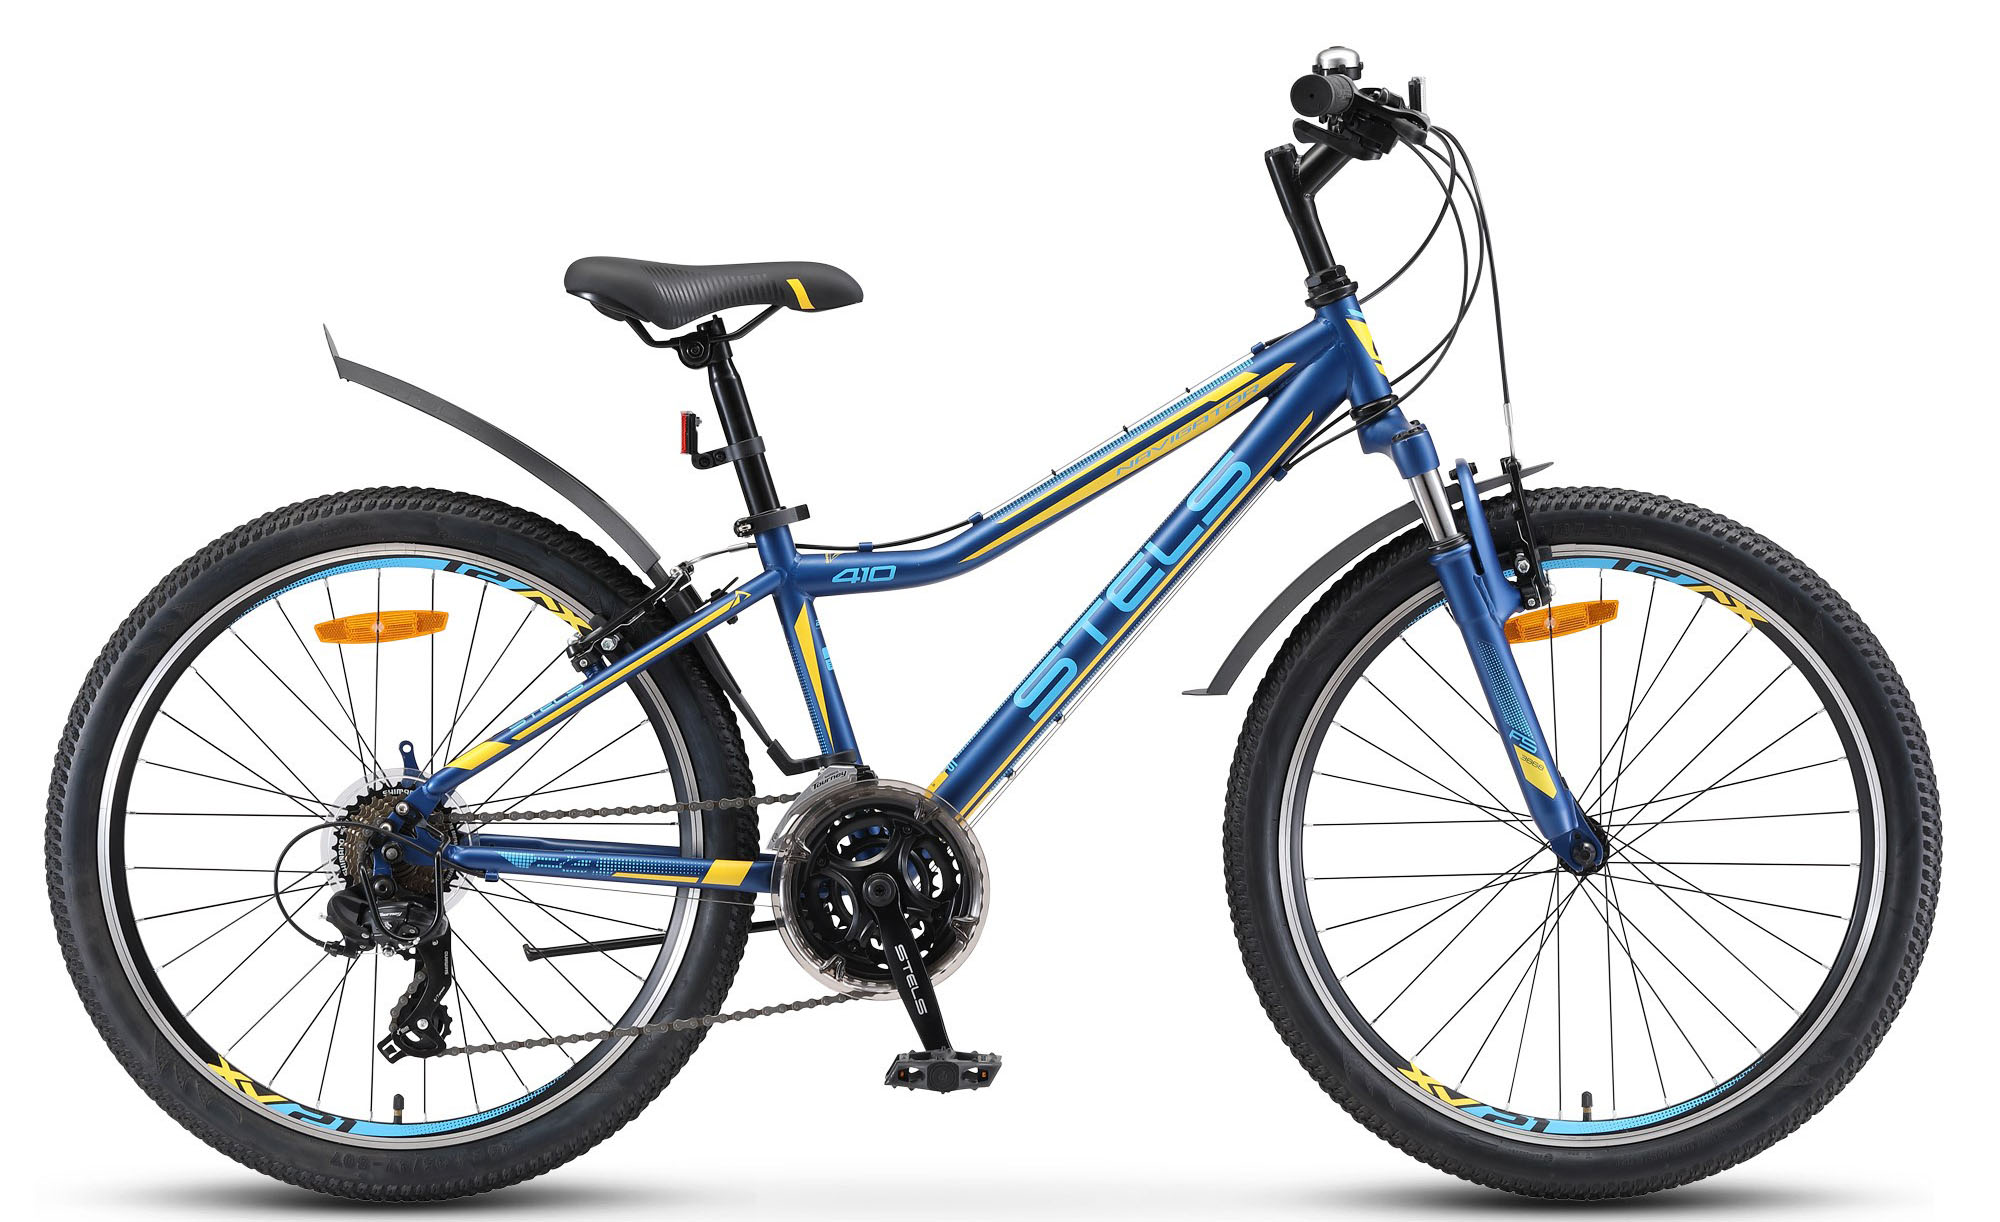  Отзывы о Подростковом велосипеде Stels Navigator 410 V 24 21-sp V010 2019